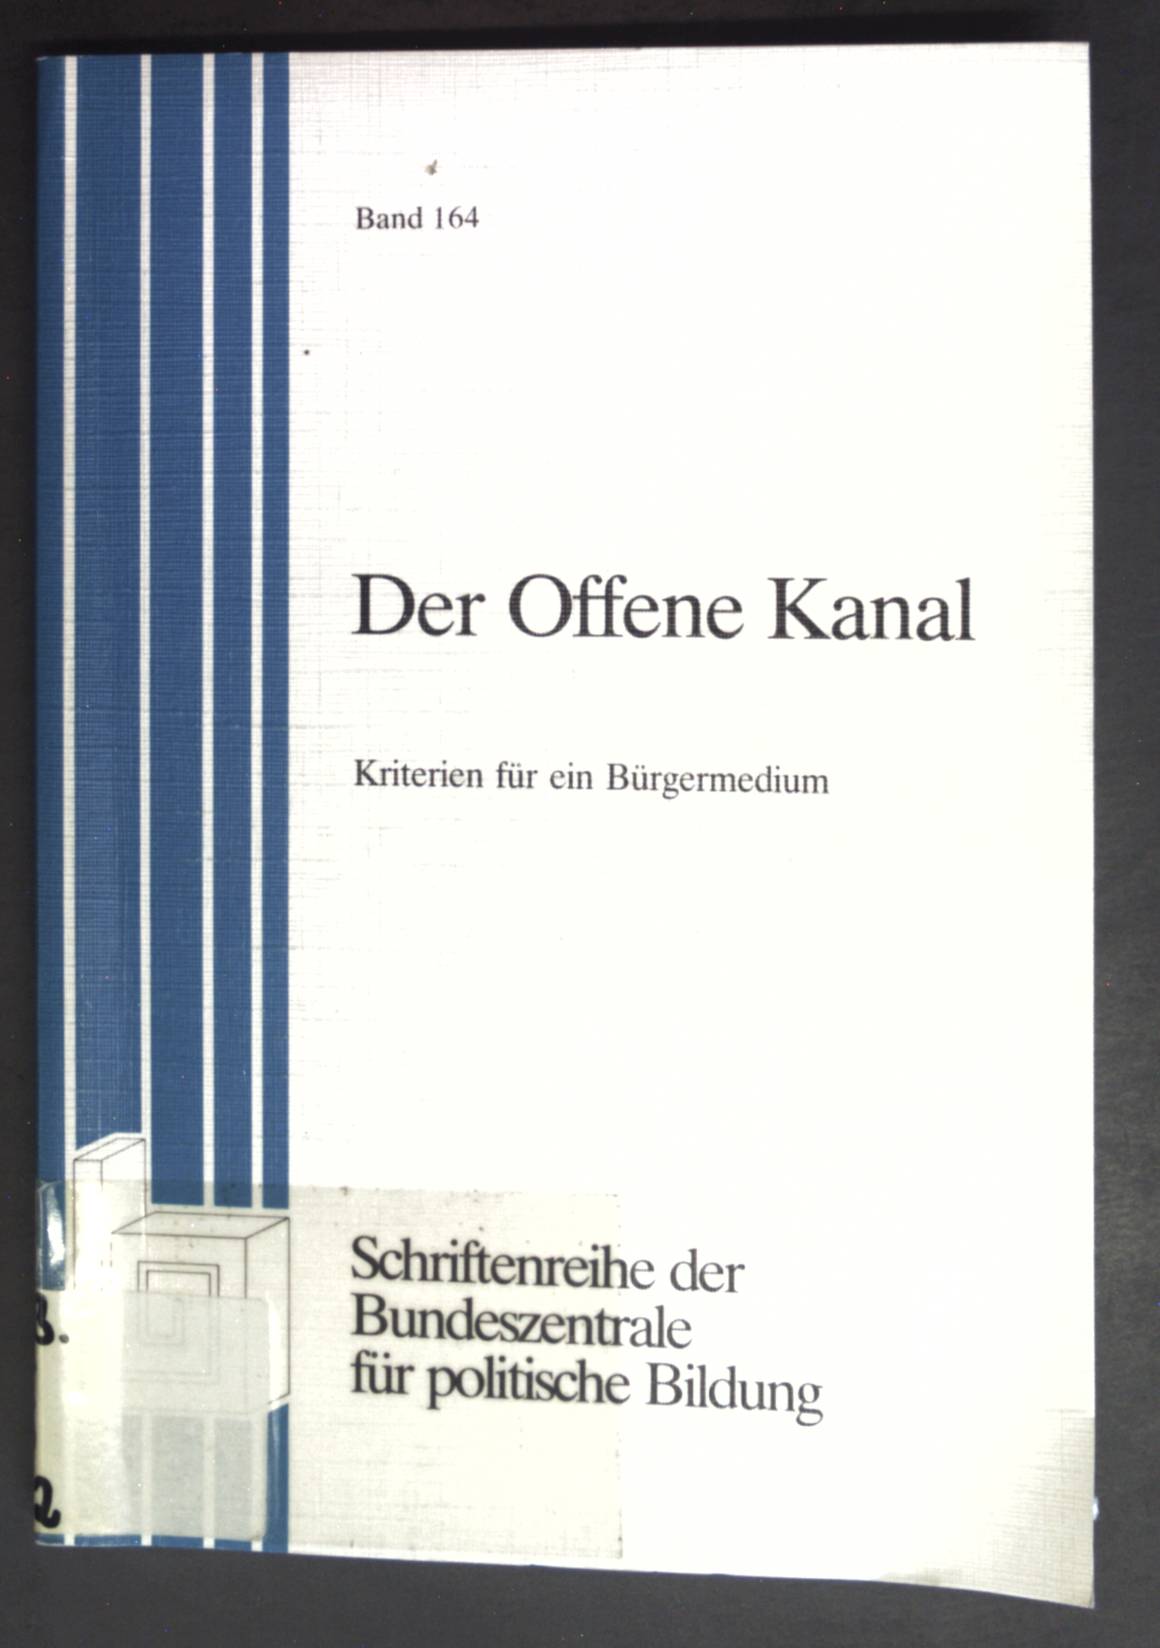 Der offene Kanal : Kriterien für e. Bürgermedium. Bundeszentrale für Politische Bildung: Schriftenreihe ; Bd. 164 2., aktualis. Aufl., Sonderdr. - Gräfer, Wilfried